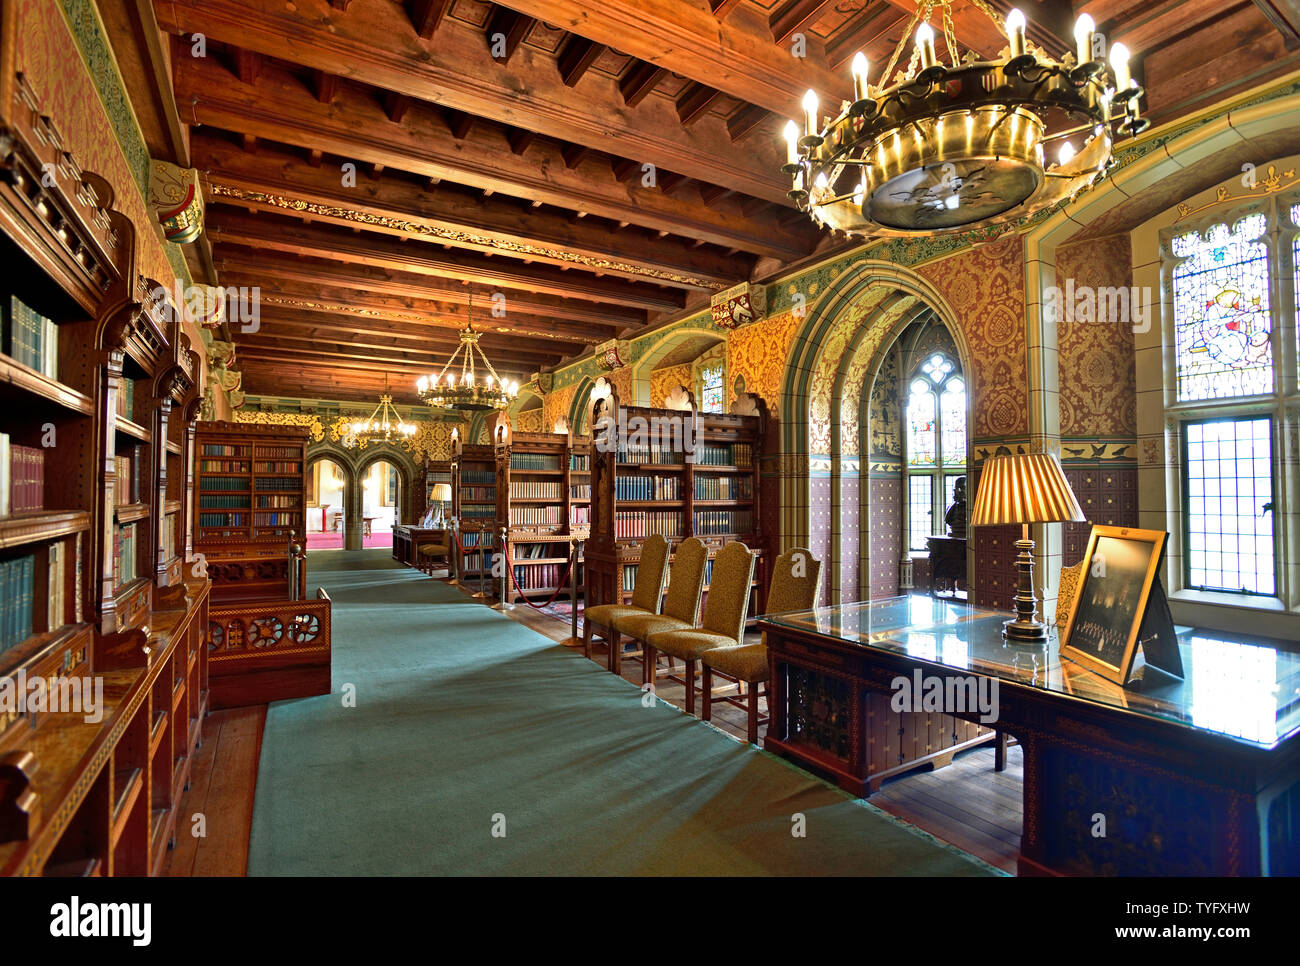 Vue panoramique de la bibliothèque du château de Cardiff, sculpture en bois au plafond, lustre, bibliothèques, livres, riche ton chaleureux, tourné en juin 2019 Banque D'Images